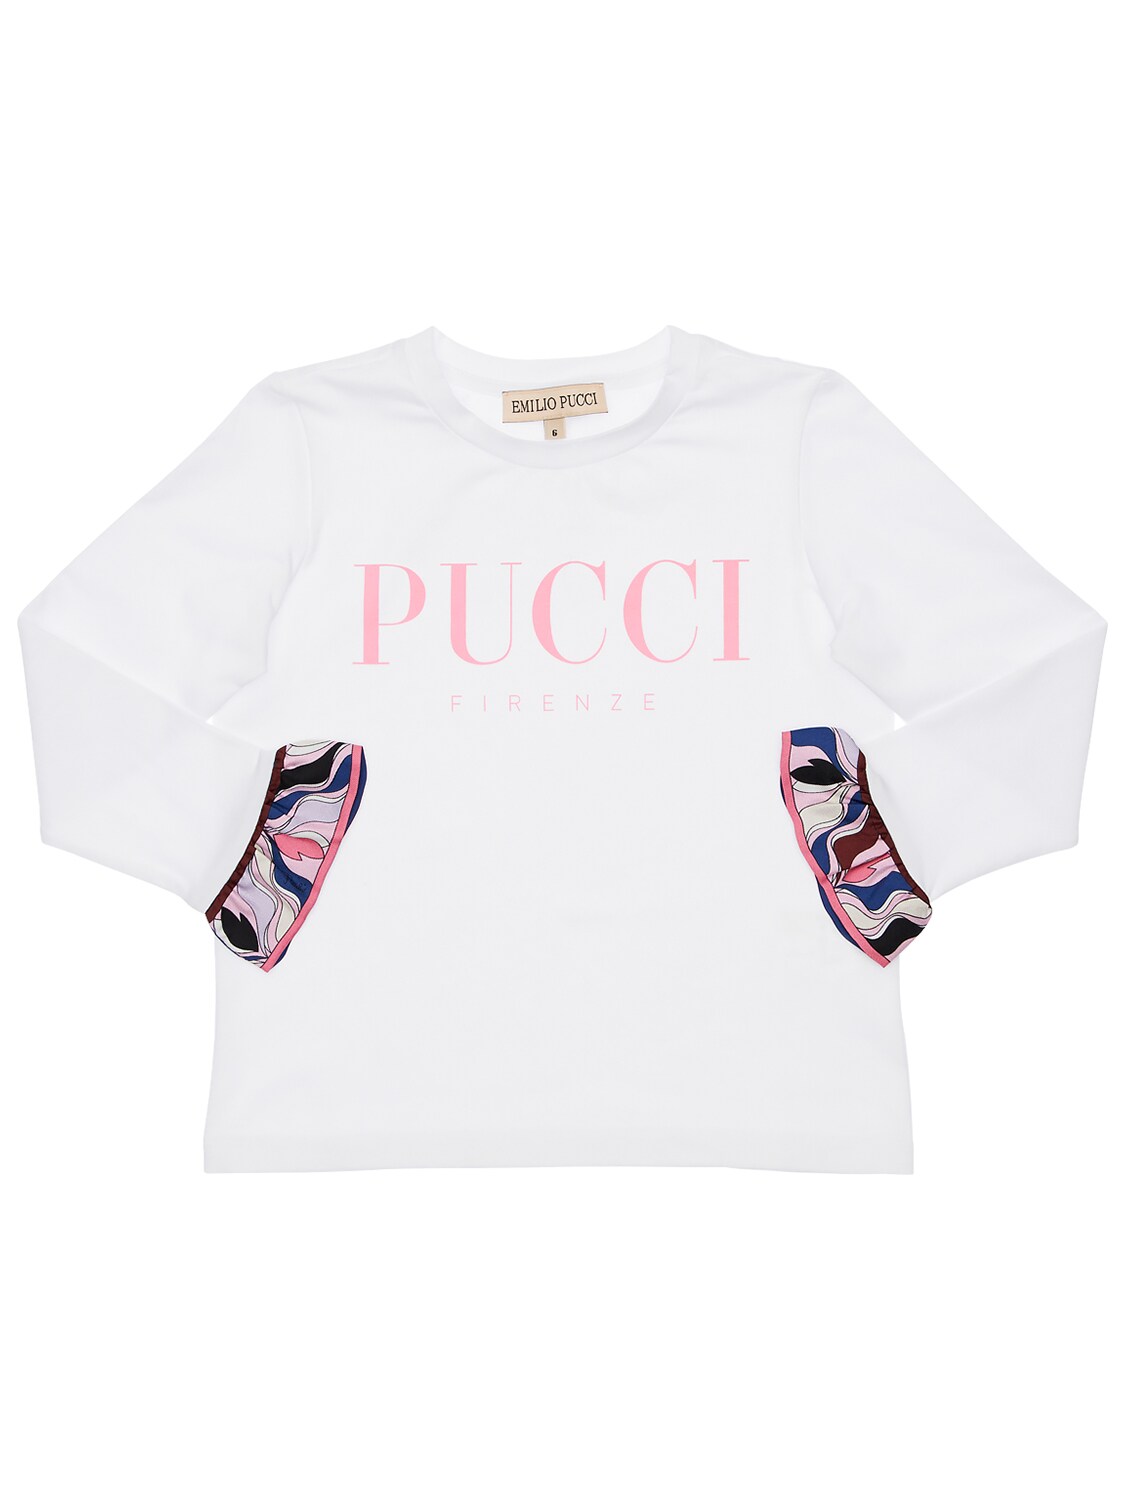 Emilio Pucci Kids' Cotton Jersey T-shirt W/ Silk Details In White,pink